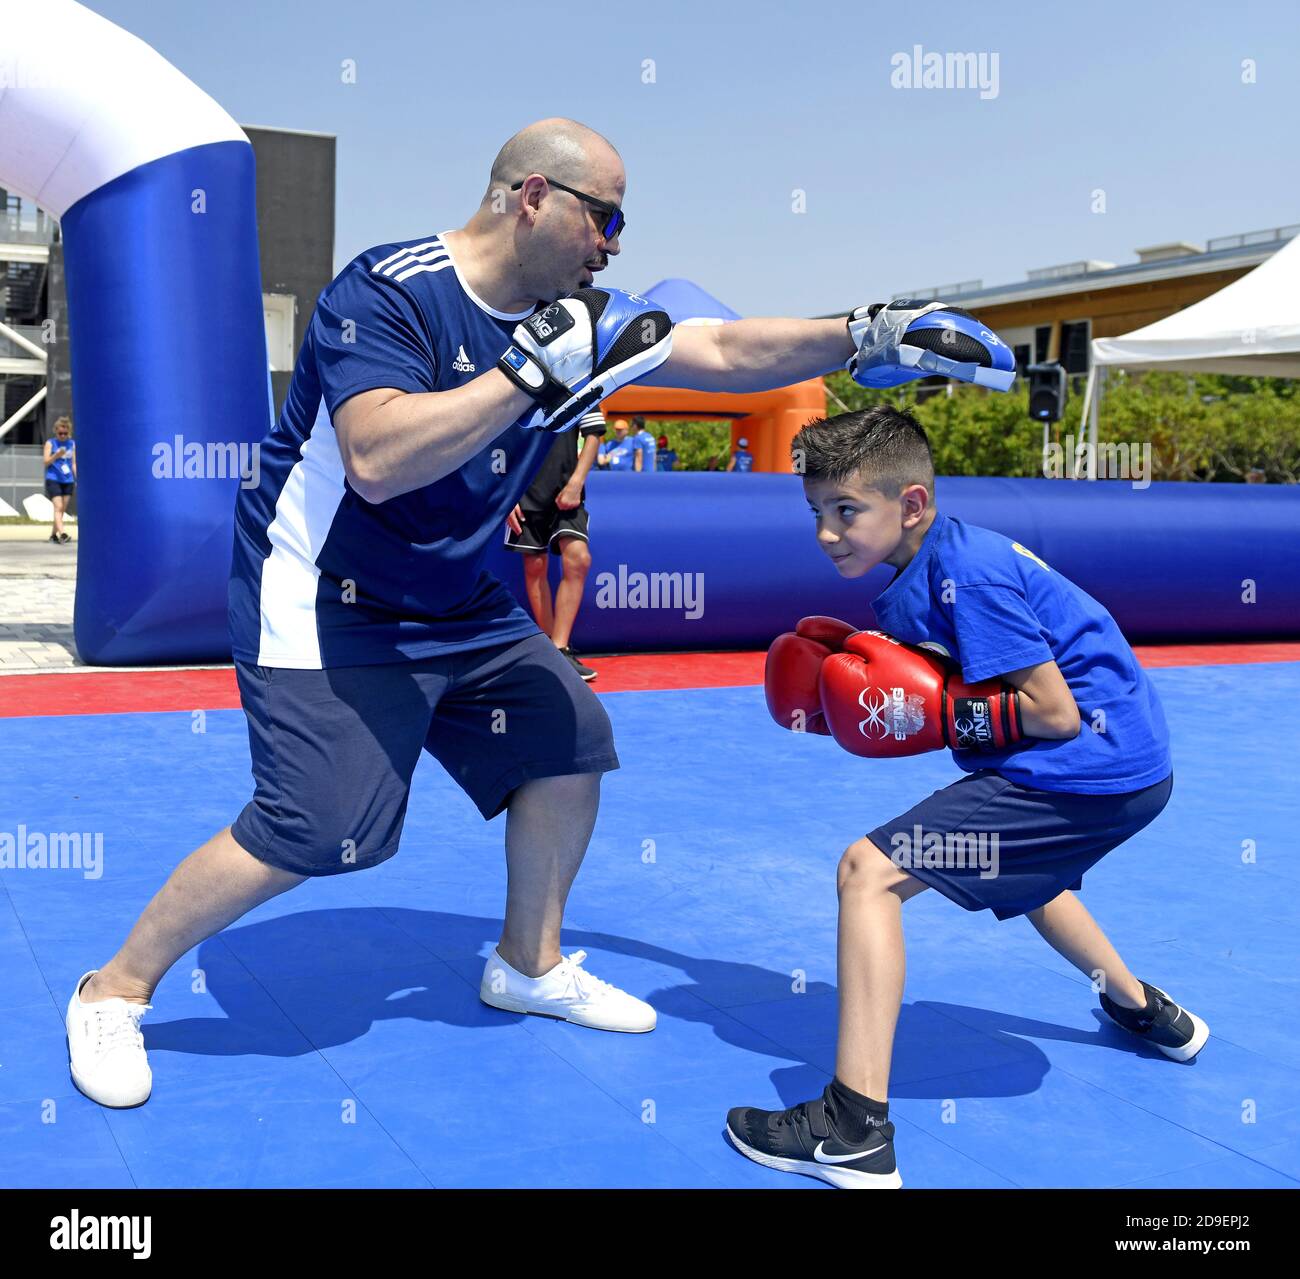 Junge Ausbildung auf Boxen, während eines Junior-Sport-Sommercamp, in Mailand. Stockfoto